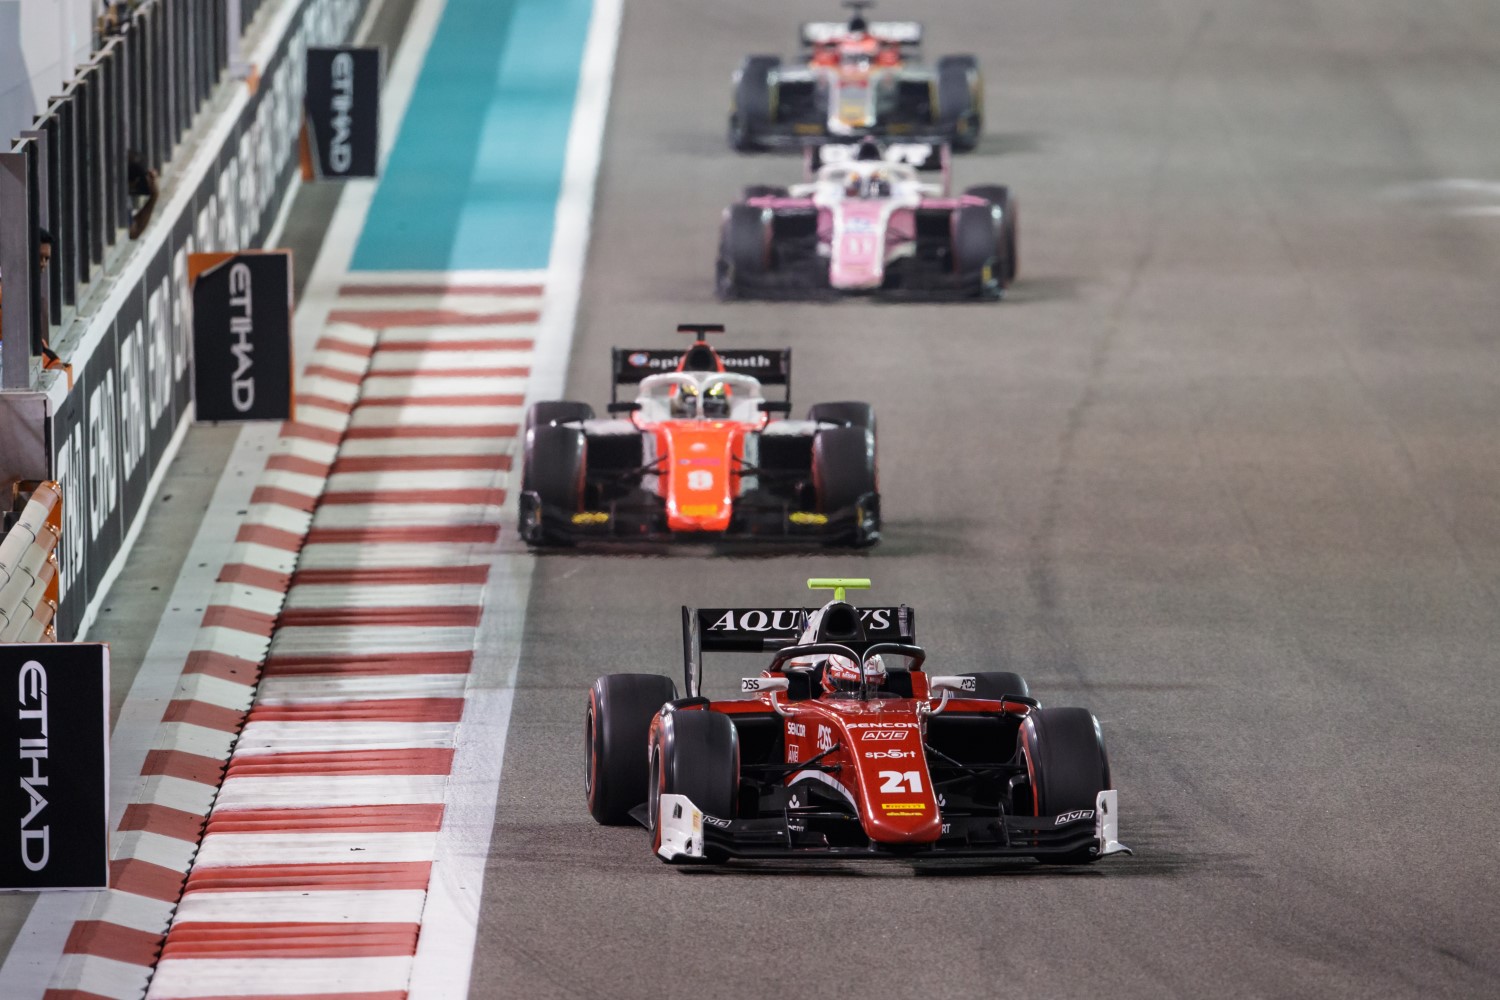 F2 action at Abu Dhabi